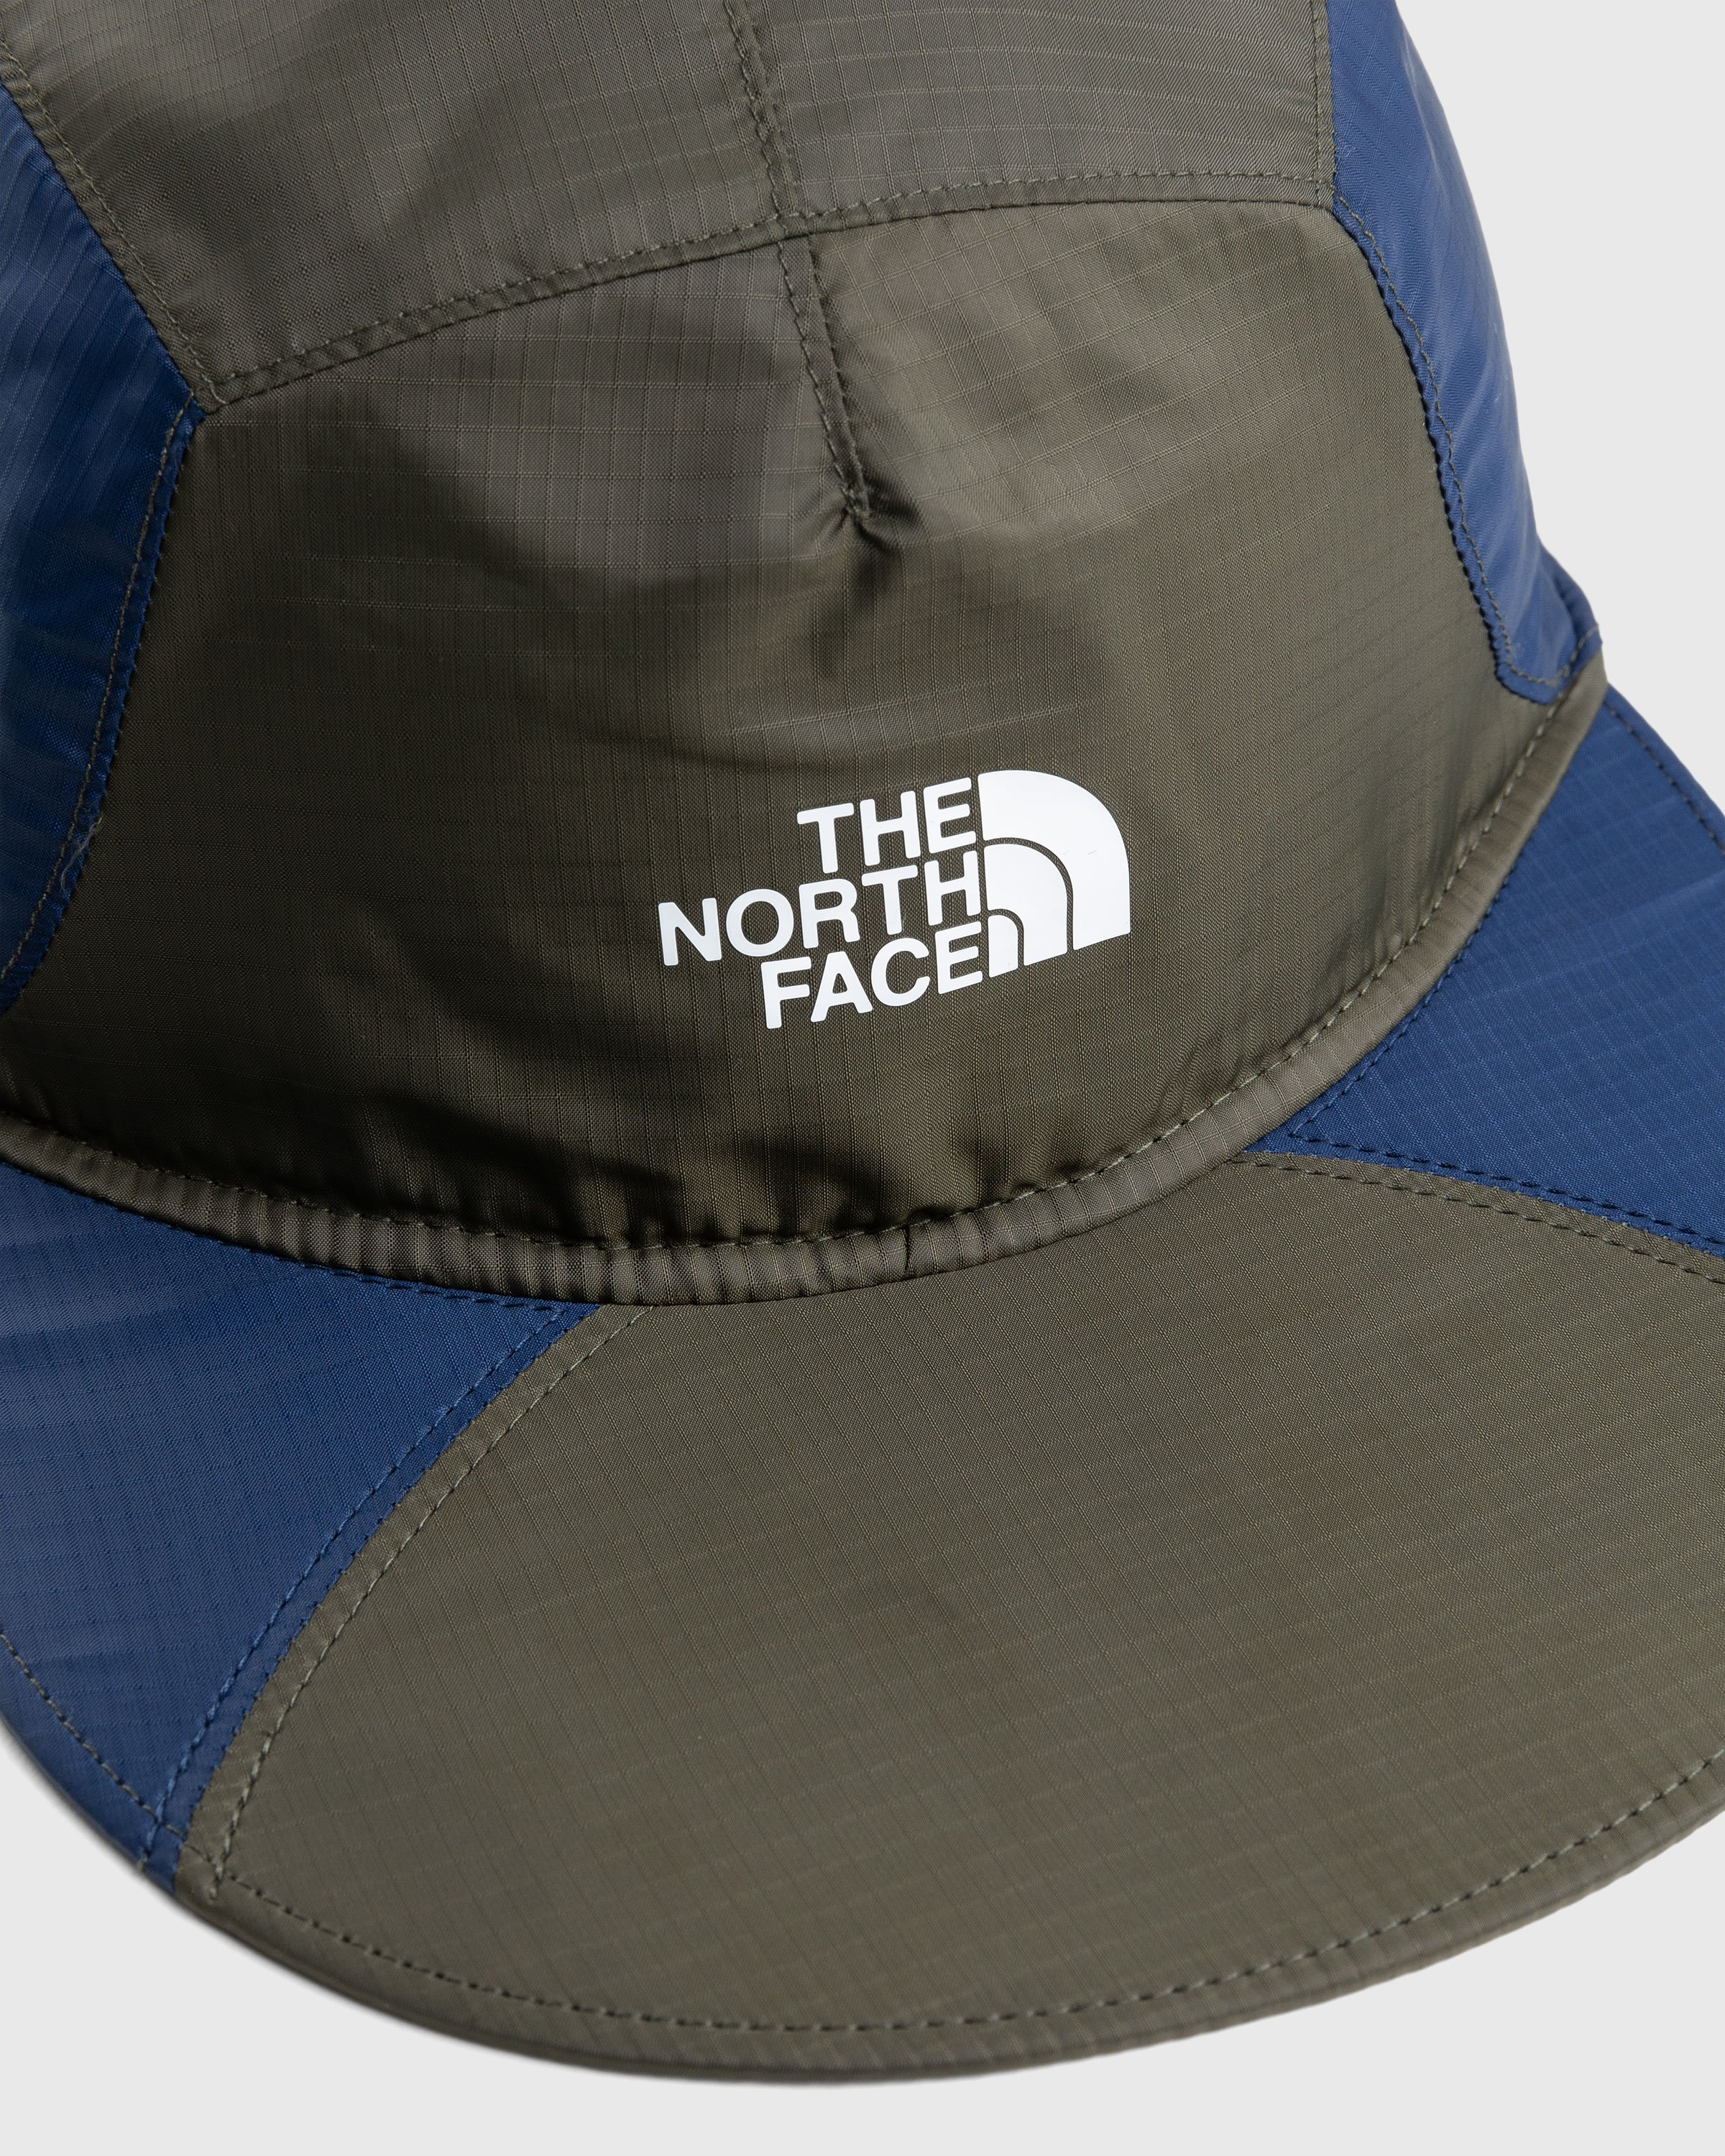 The North Face - ‘92 Retro Cap Green - Accessories - Black - Image 6